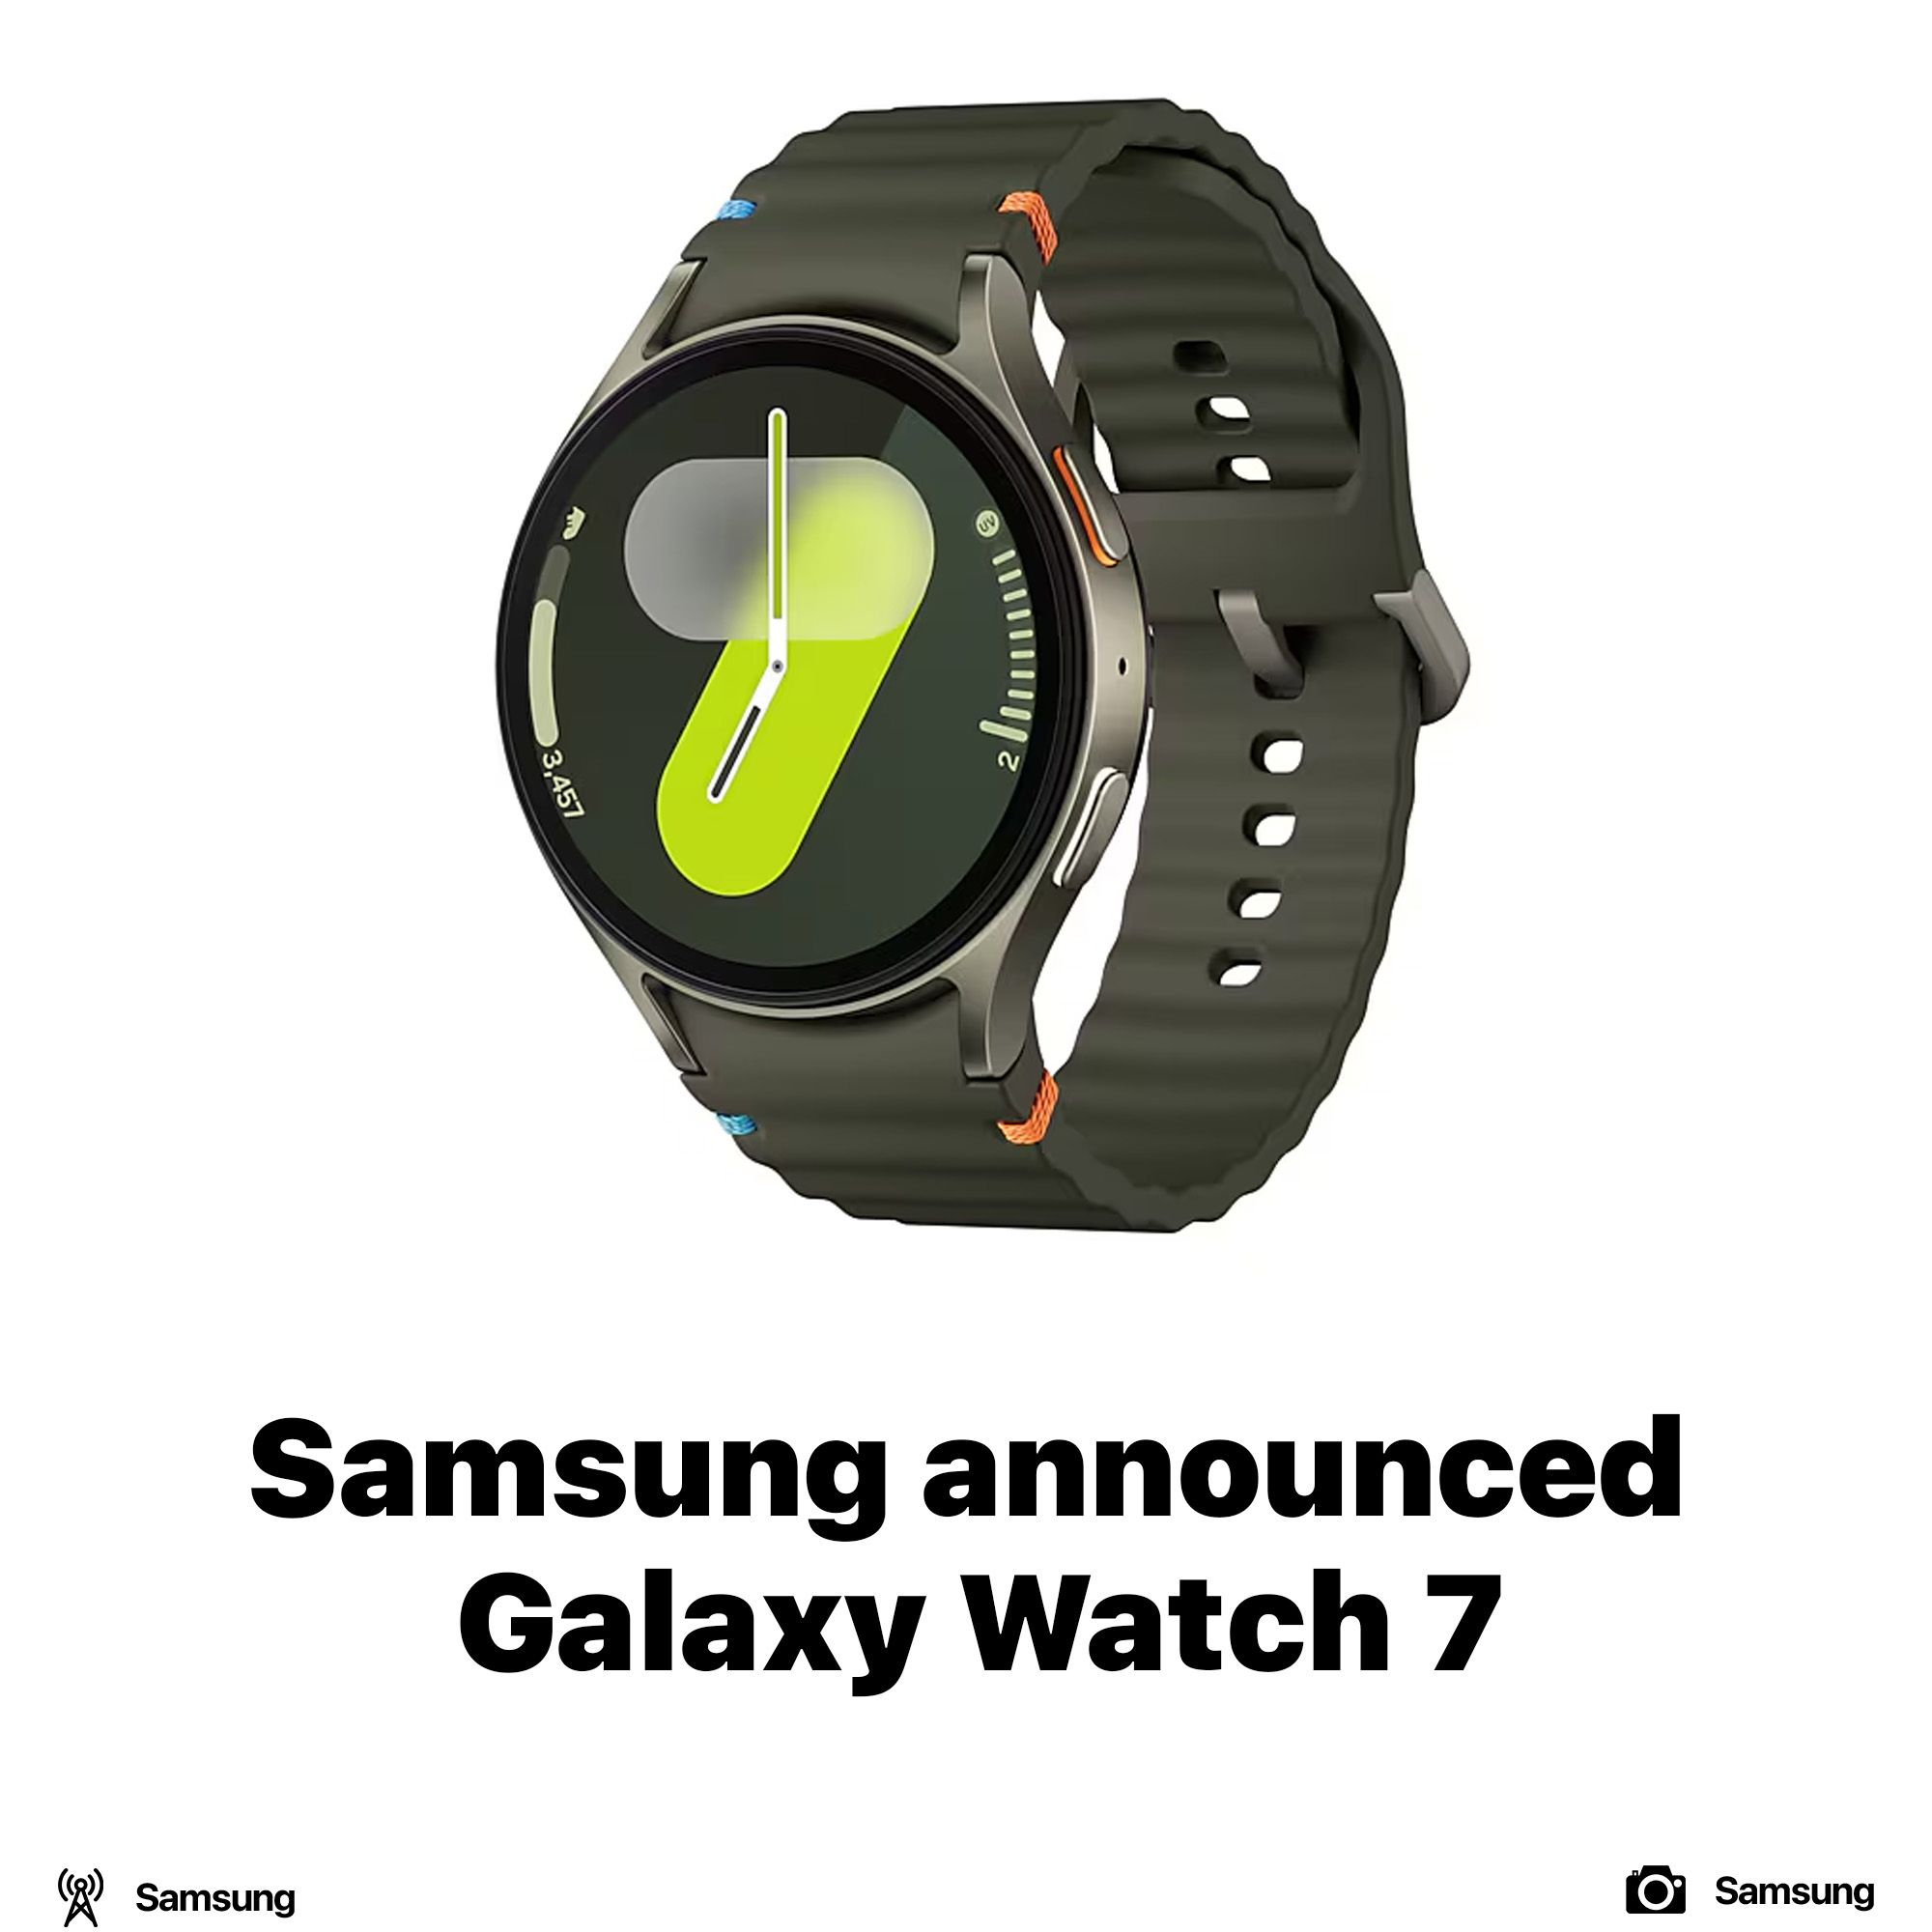 Samsung announced Galaxy Watch 7